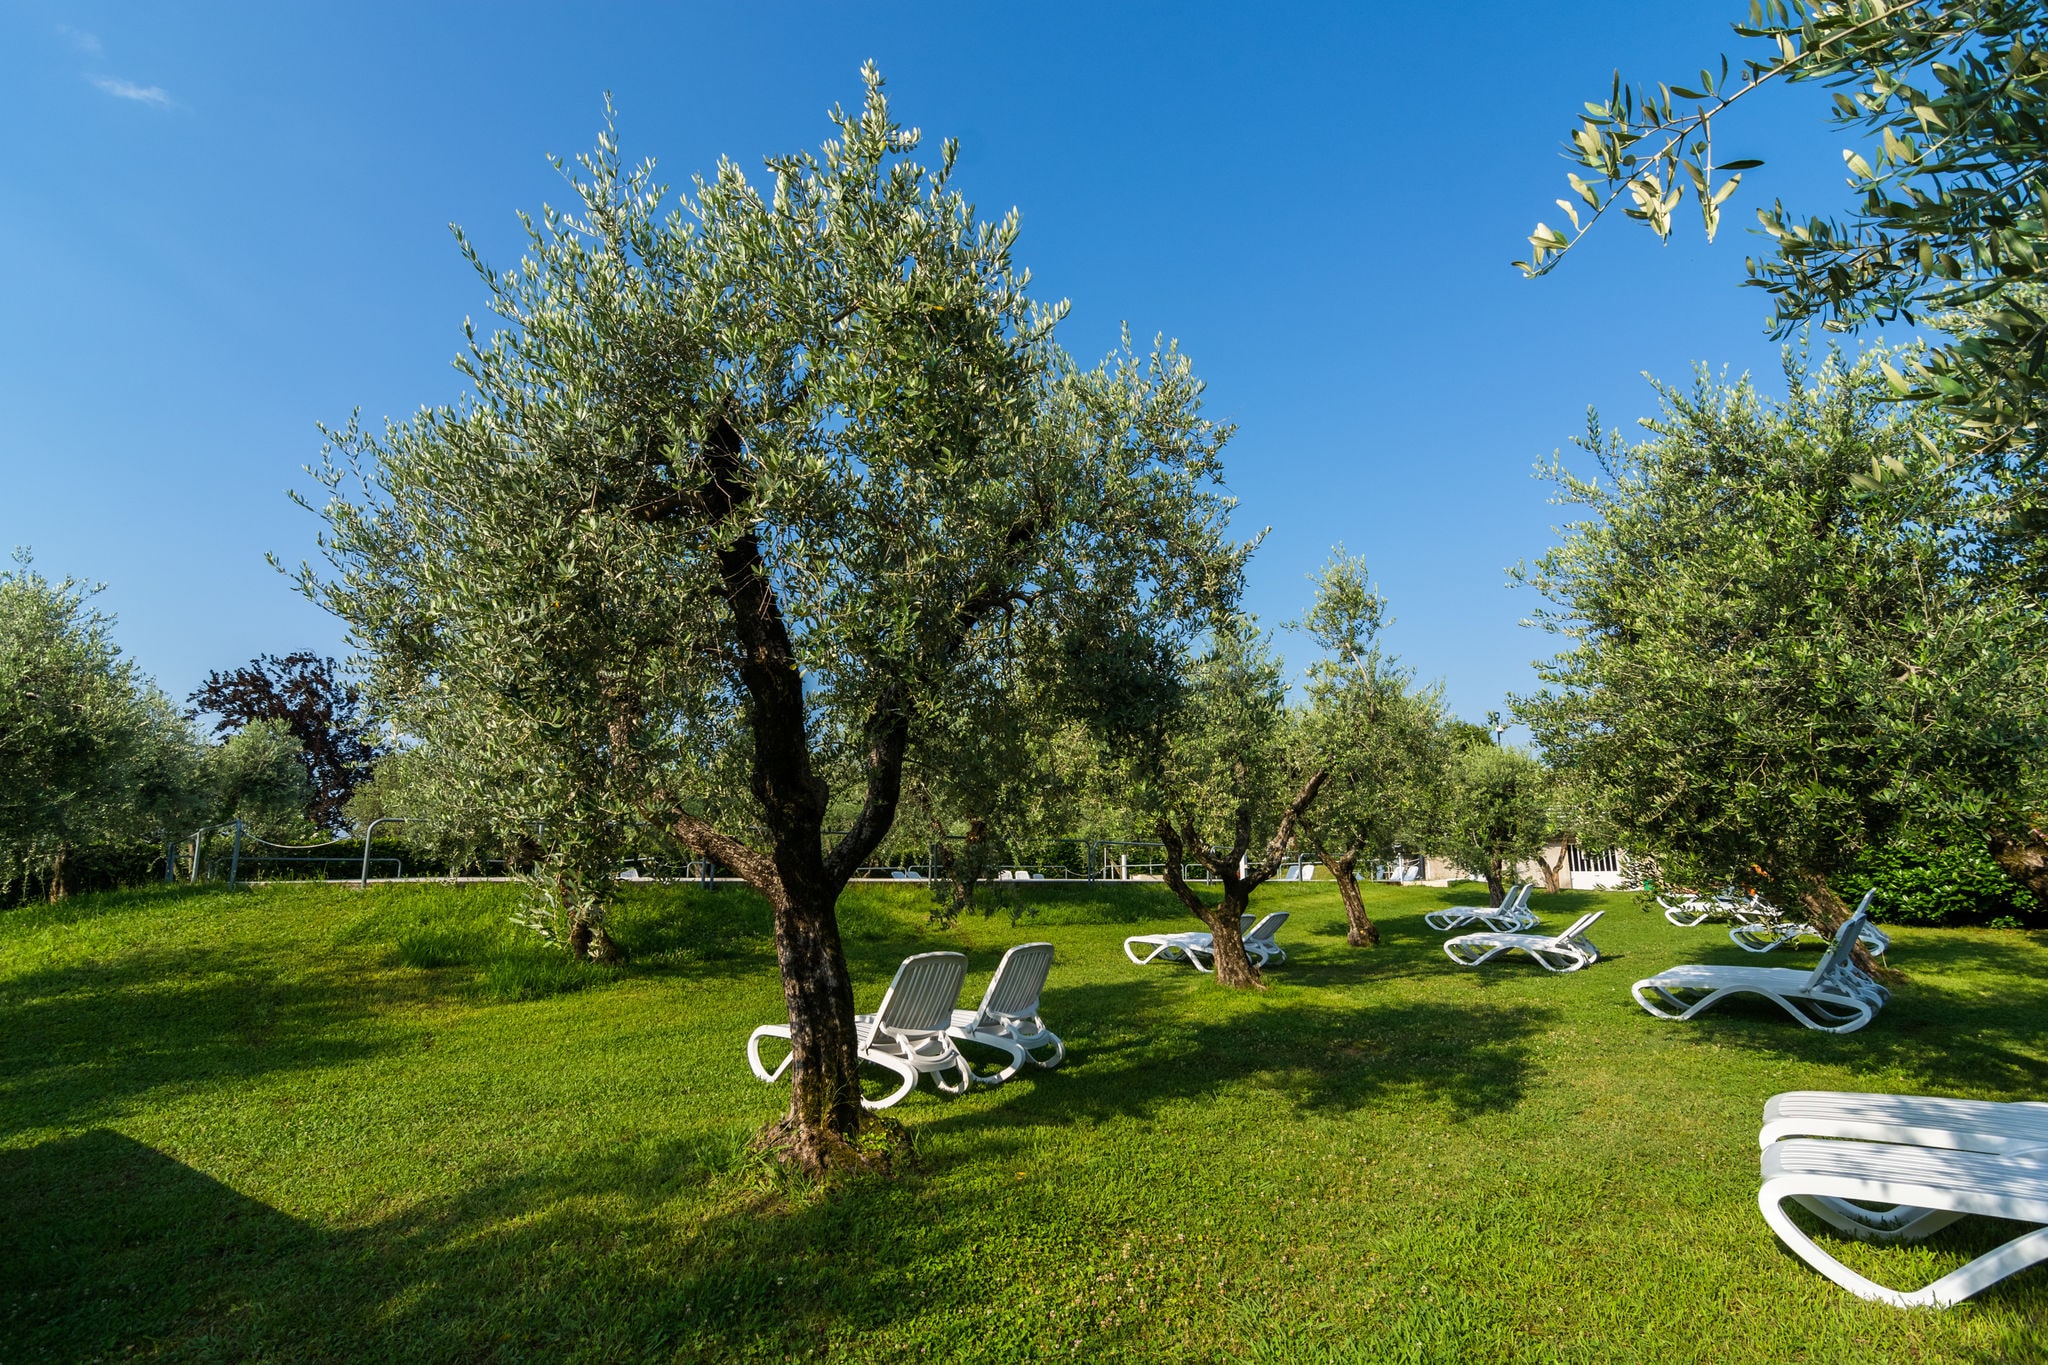 Maison de vacances de luxe à Manerba del Garda près d'un lac